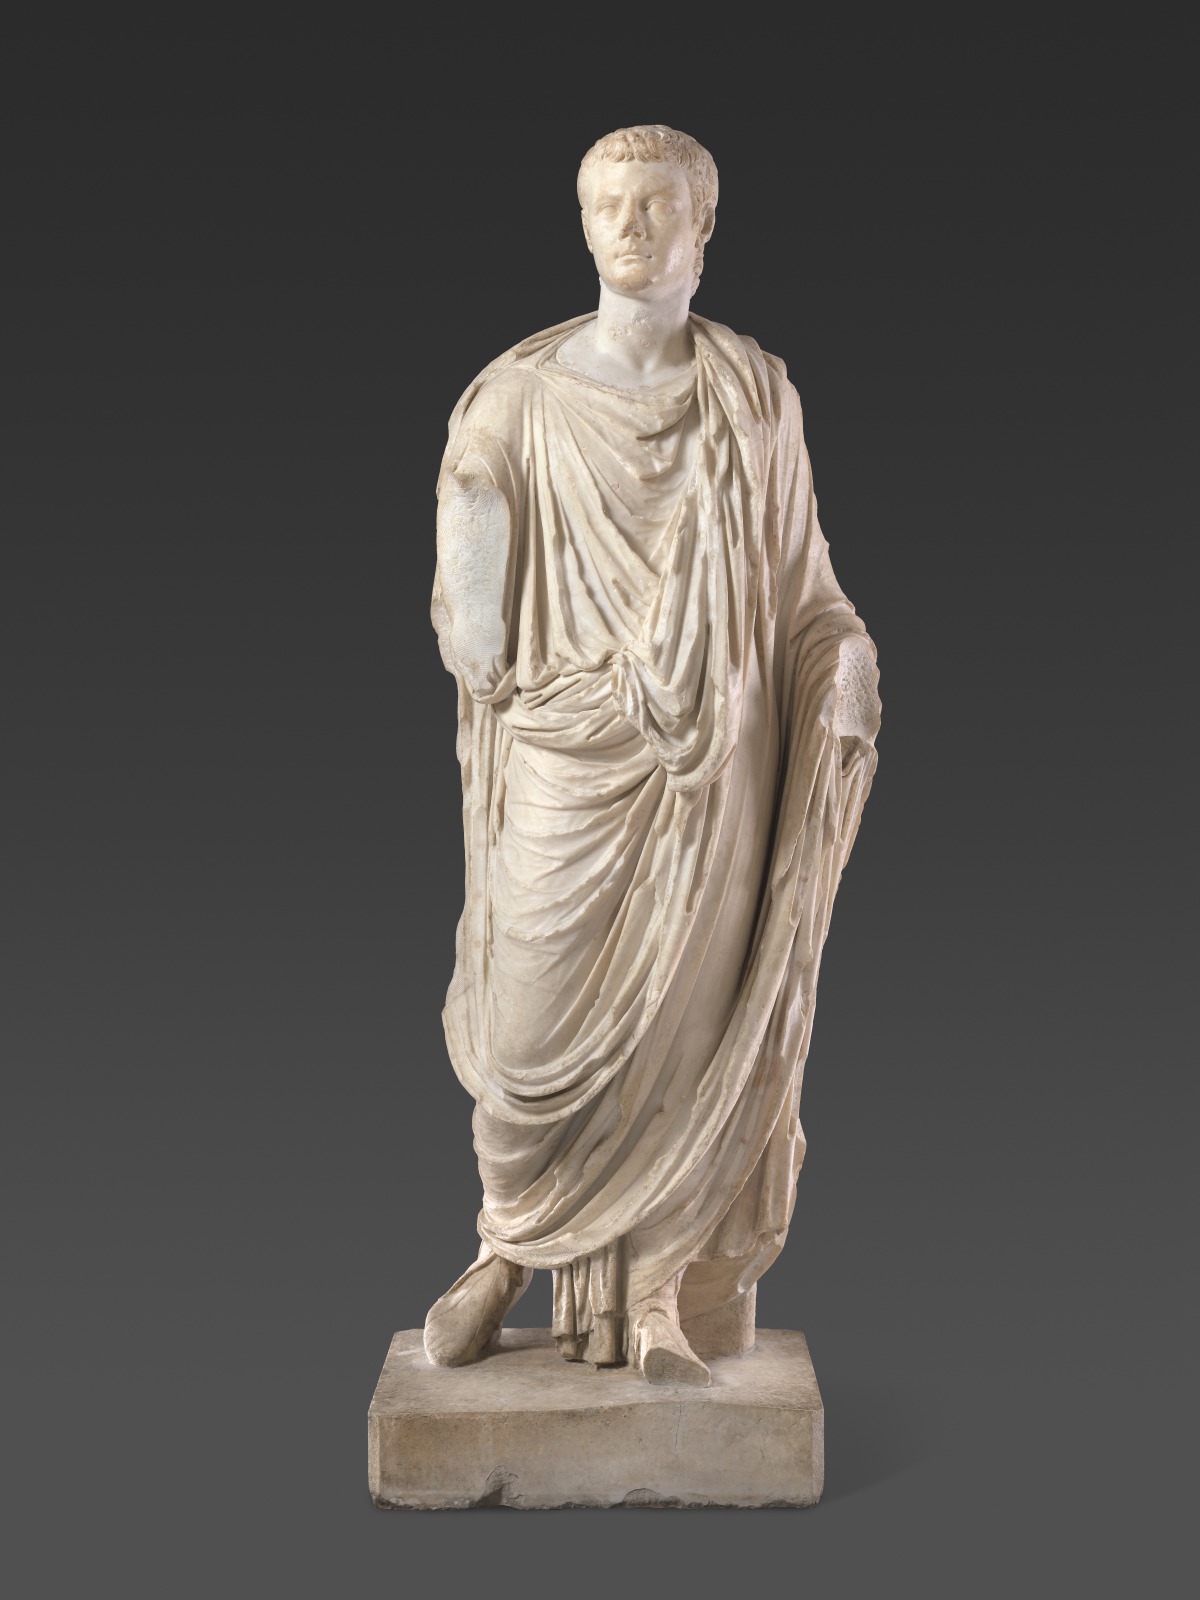 Gaius Julius Caesar Augustus Germanicus ("Caligula")